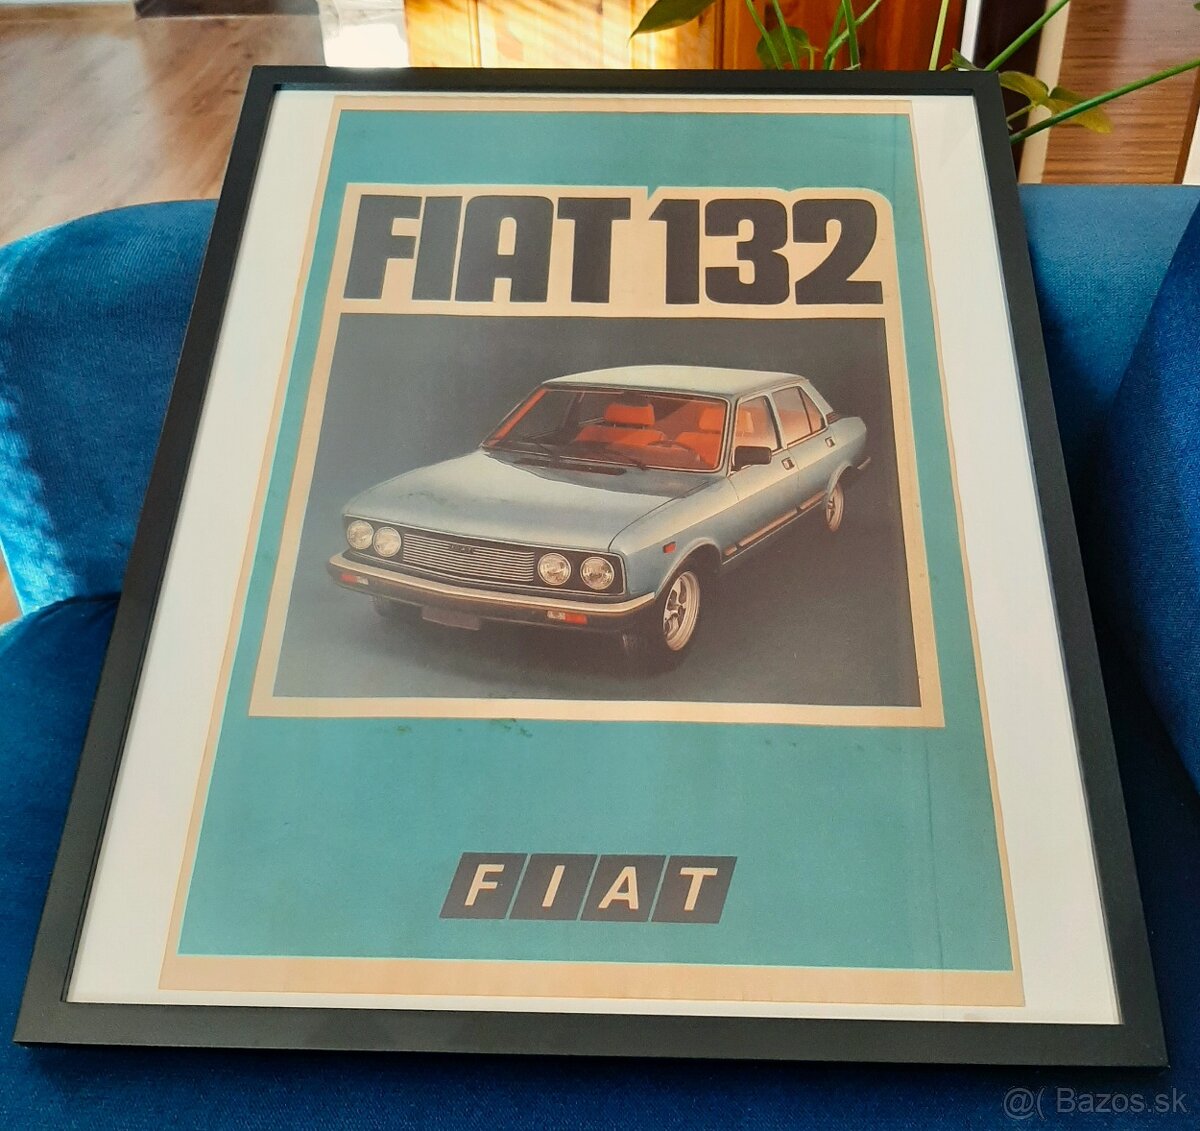 Vzácny automobilový plagát - FIAT 132